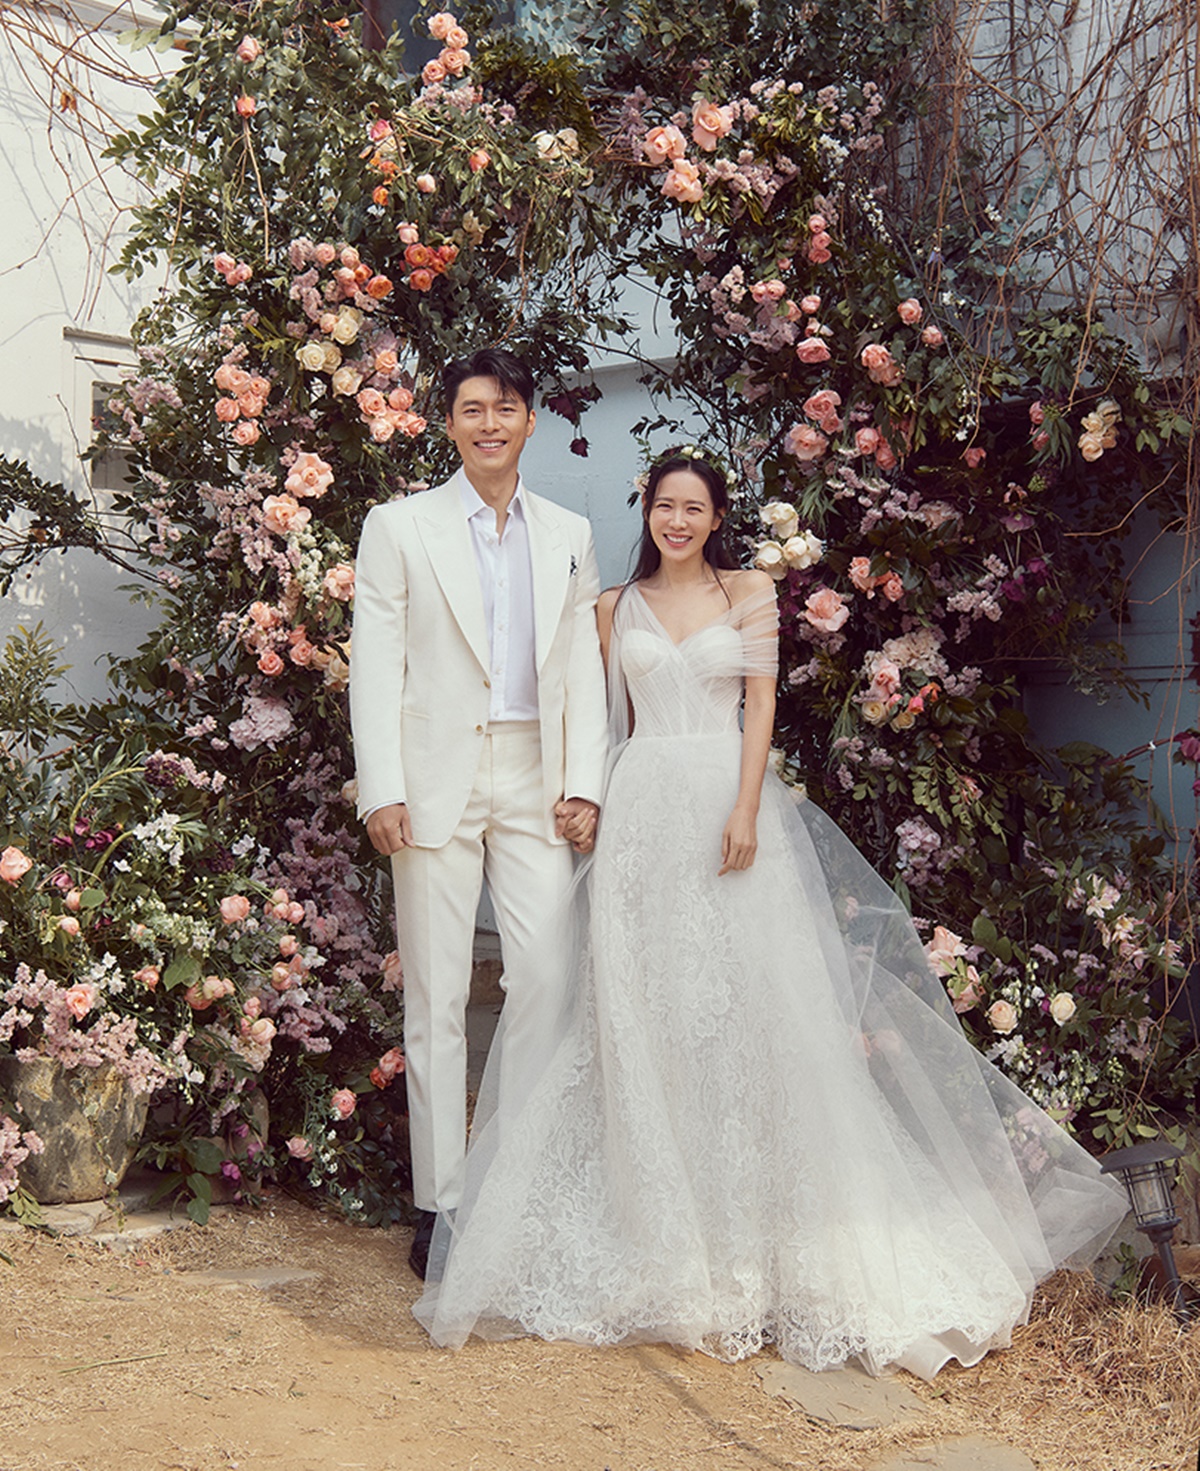 Những hình ảnh từ dự lễ cưới của Hyun Bin và Son Ye Jin đang được cư dân mạng quan tâm và chia sẻ nhiều. Đôi tình nhân nổi tiếng đã tạo ra những khoảnh khắc lãng mạn và độc đáo tại đám cưới của họ. Hãy xem những bức ảnh của họ để cảm nhận tình yêu đôi lứa và tìm hiểu về những chi tiết đặc biệt của đám cưới này.